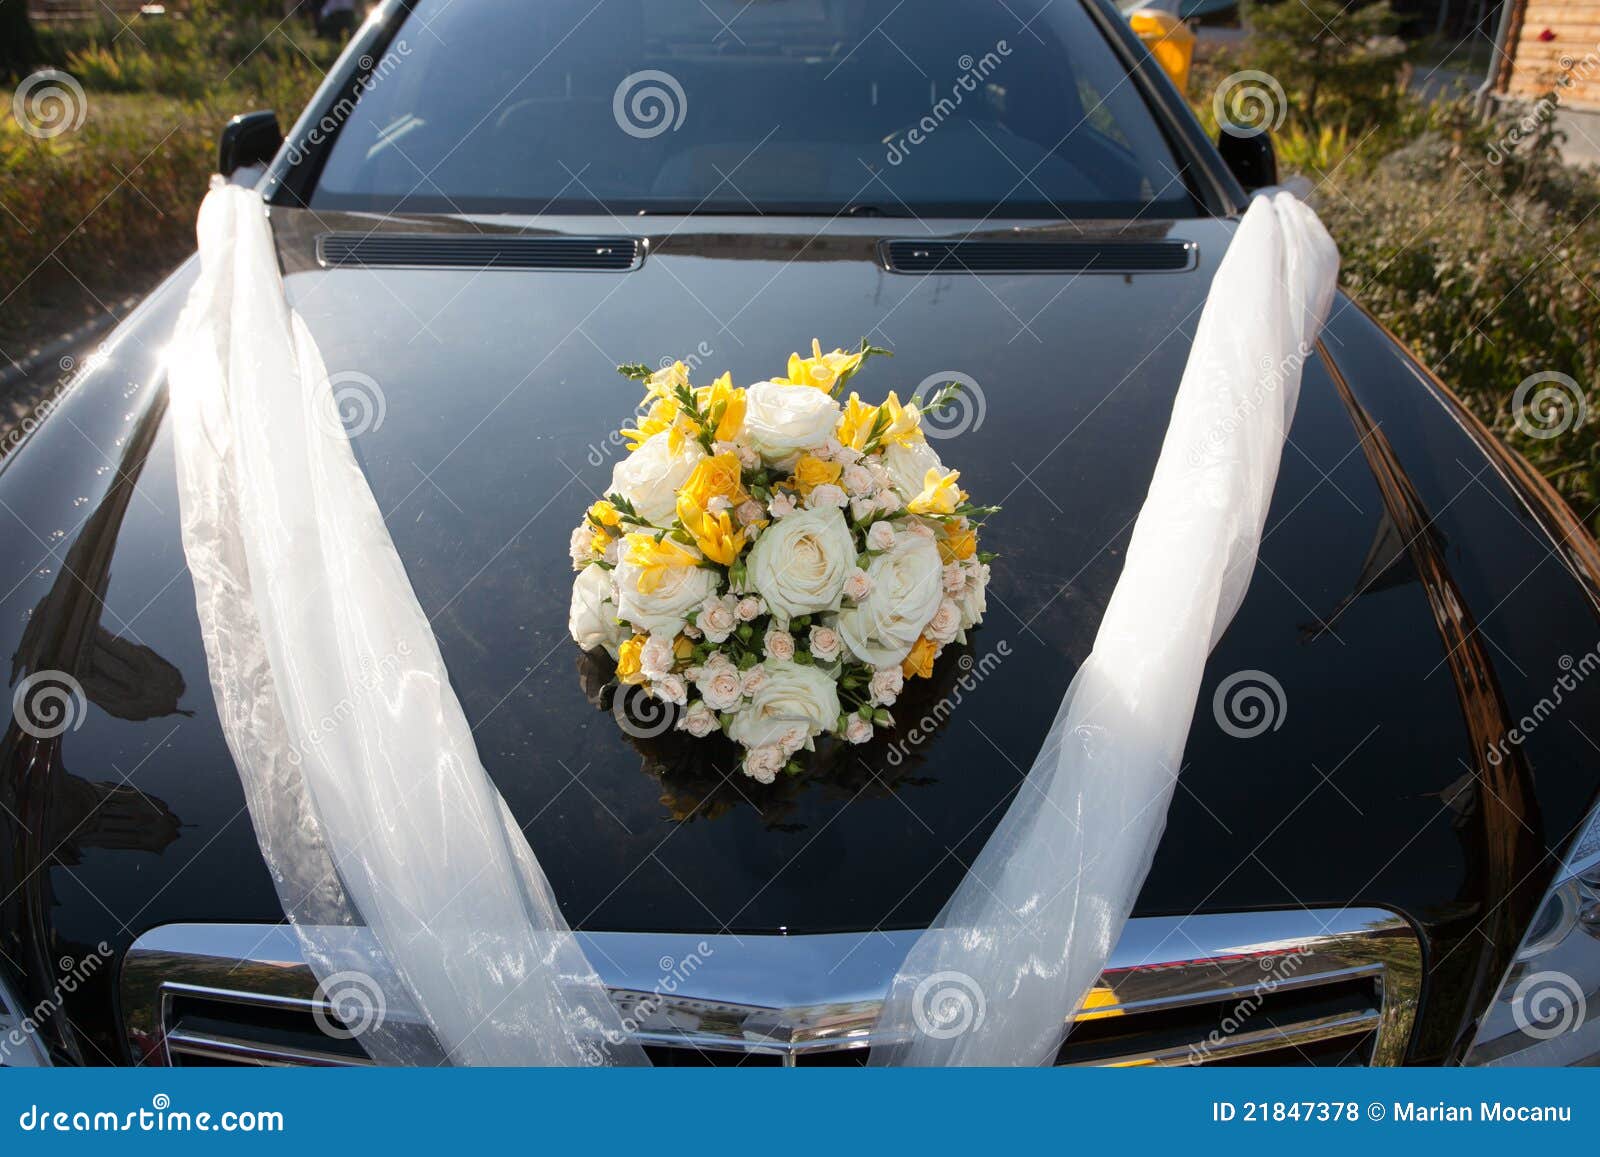 Car wedding decoration stock photo. Image of holiday - 21847378